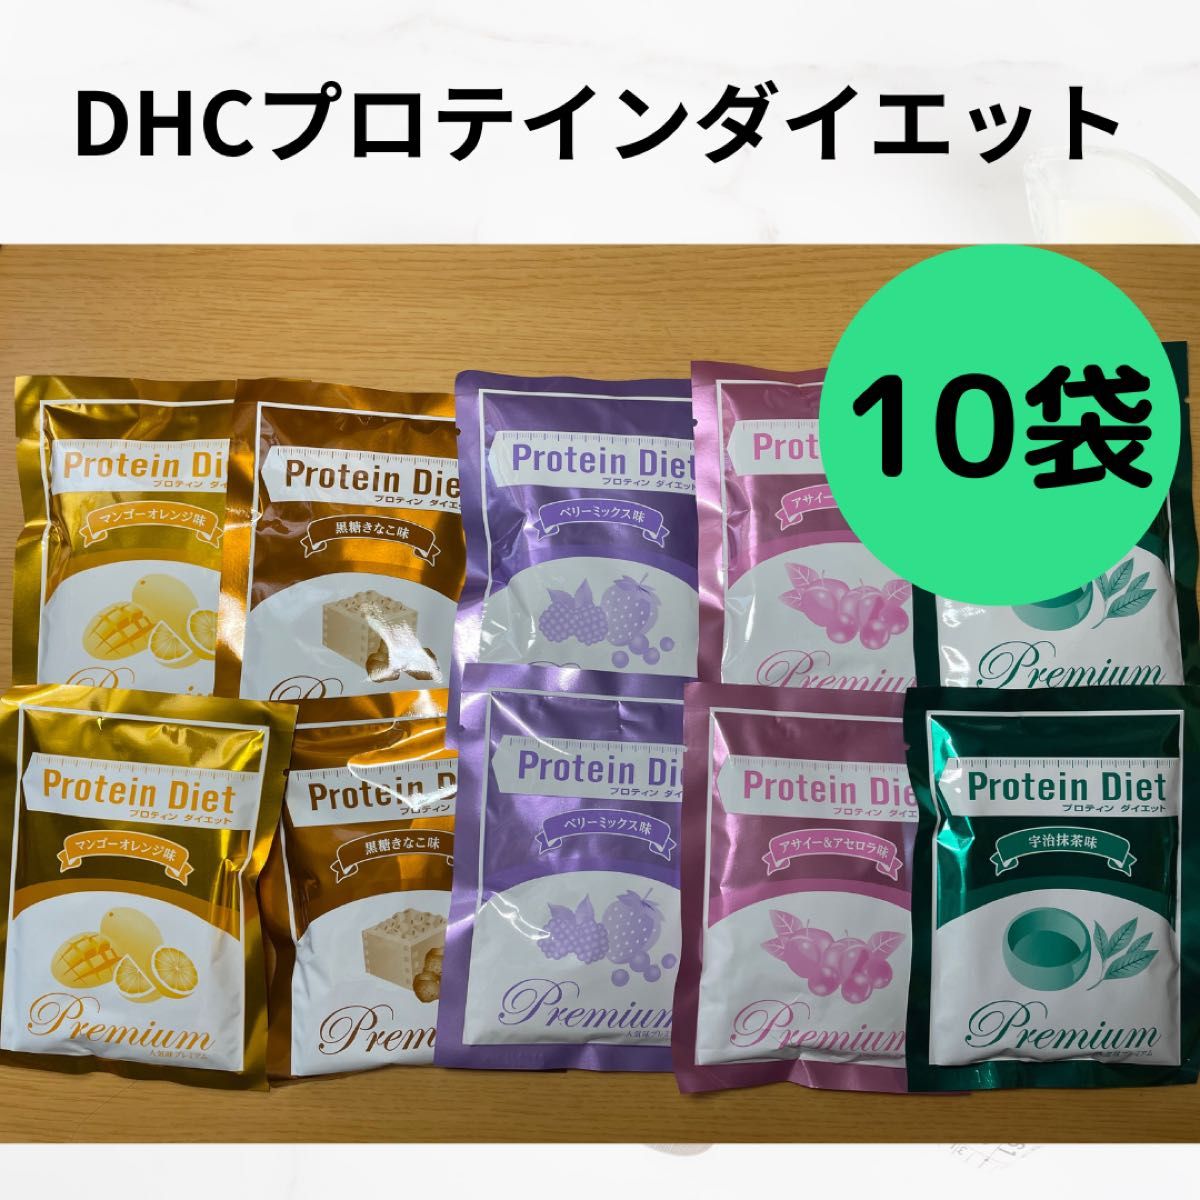 DHC プロテインダイエット 人気味プレミアム 10袋 - ダイエット